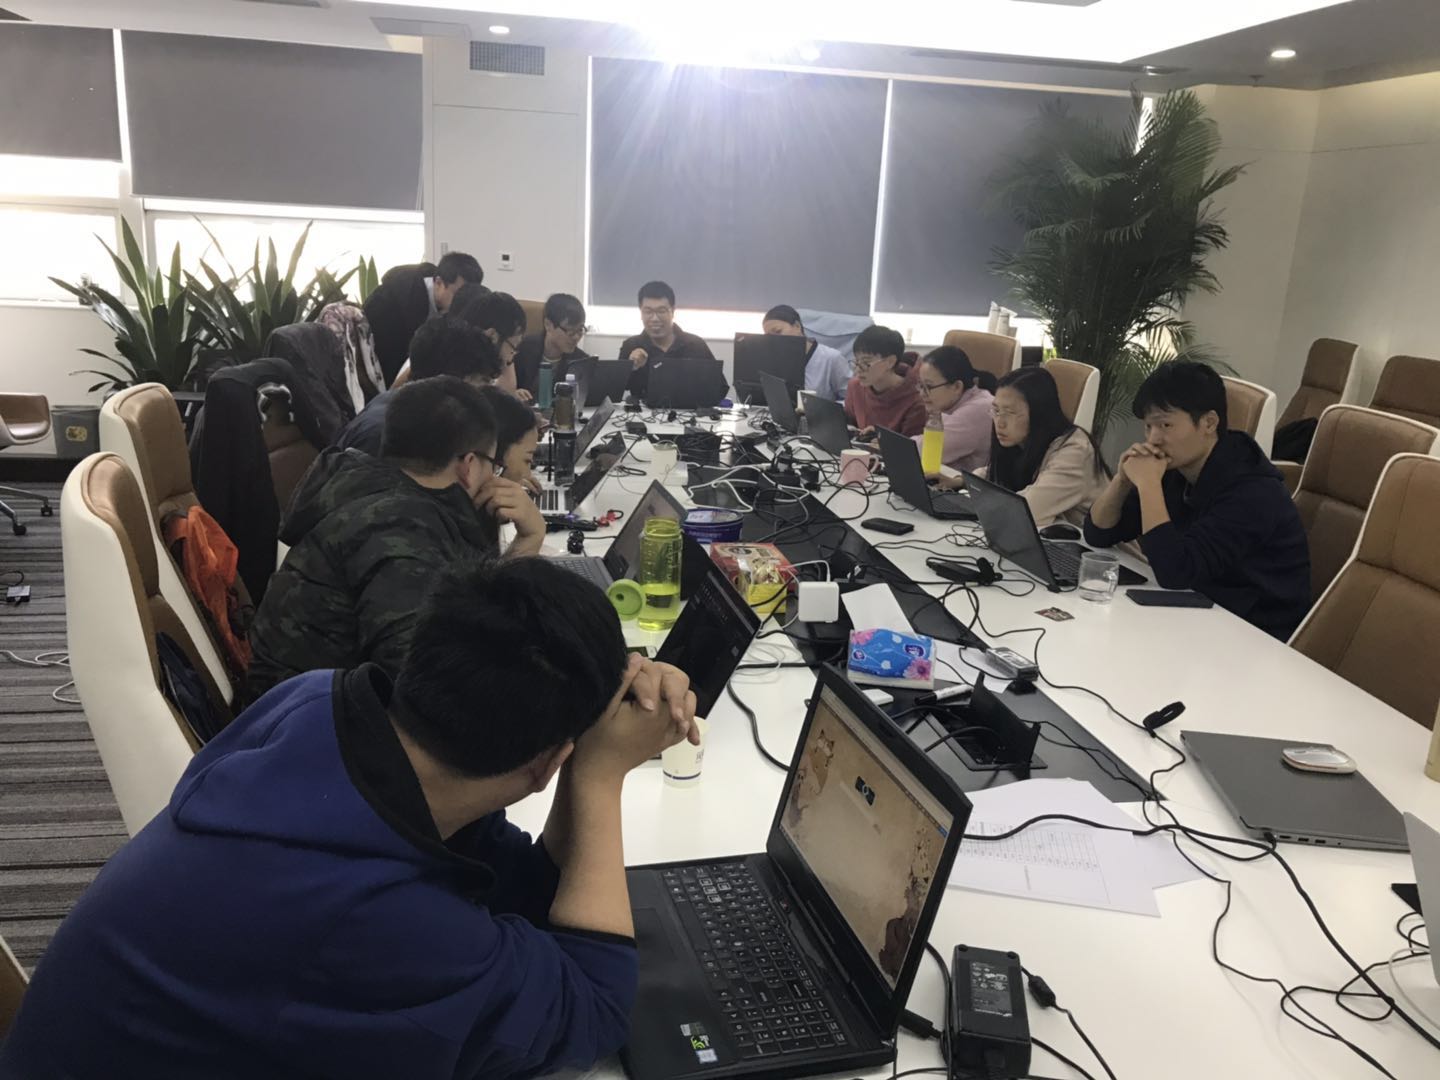 iS-RPA 技术认证培训 - 北京 201904010 班 - 培训完成